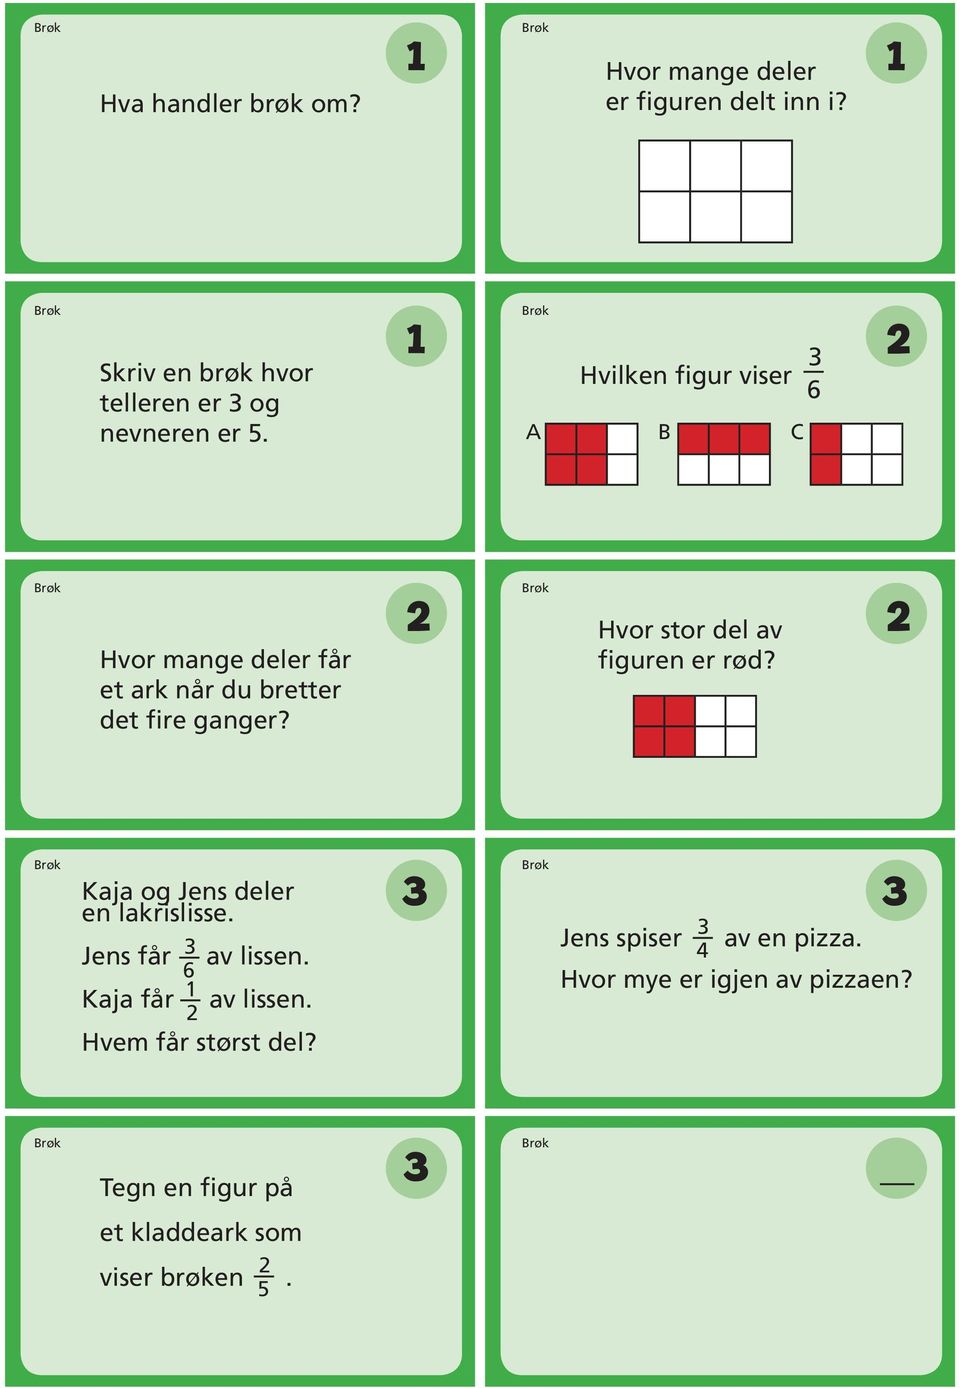 Brøk Hvilken figur viser 6 A B C Brøk Hvor mange deler får et ark når du bretter det fire ganger?